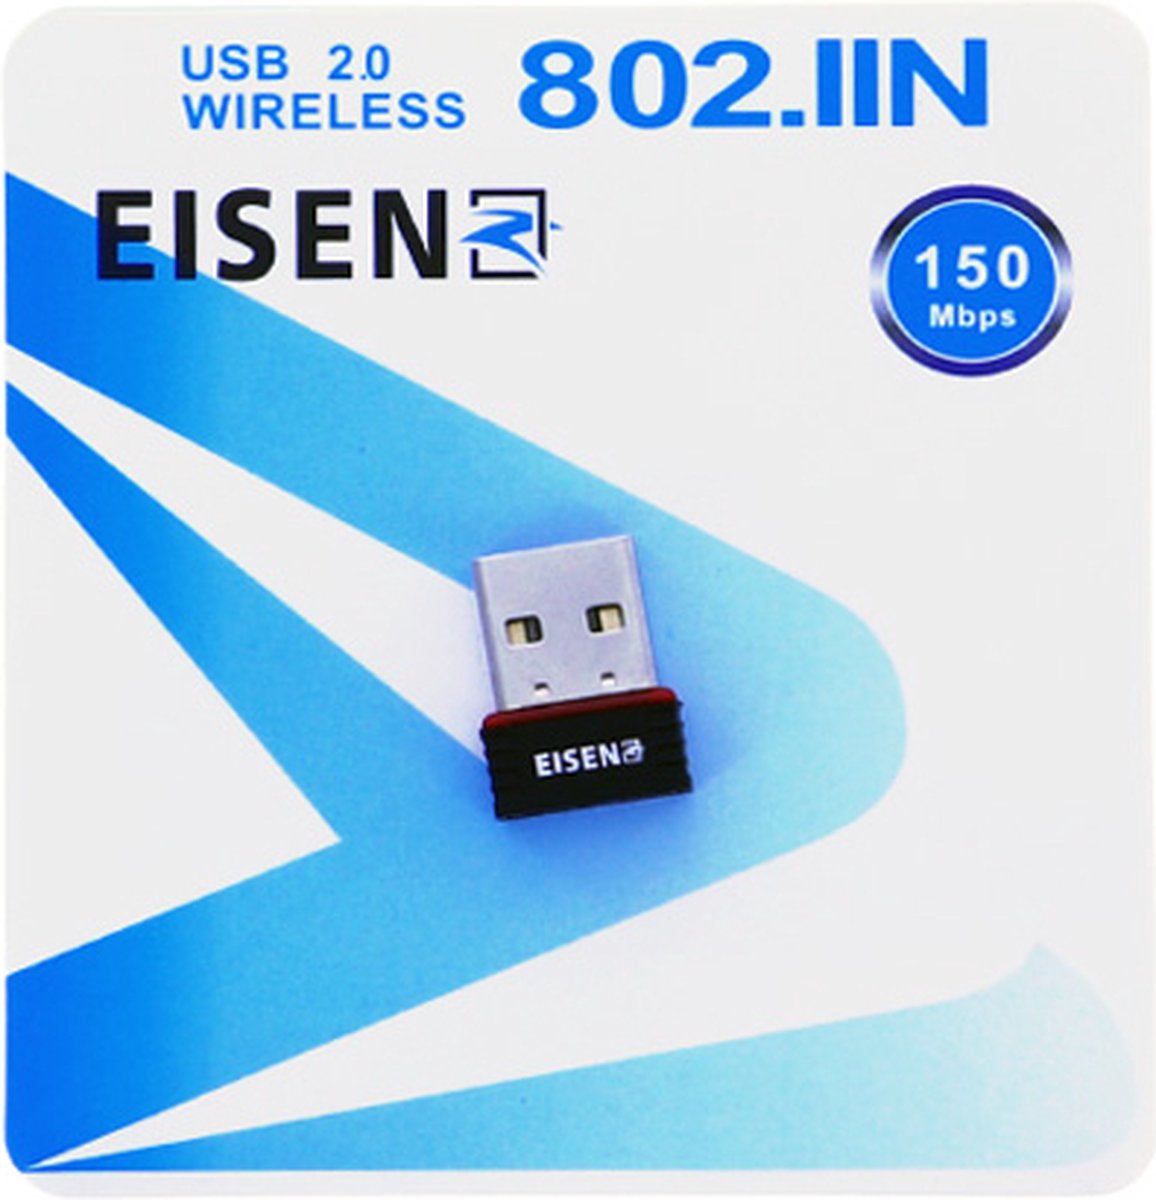 Eisenz USB wifi ontvanger, wifi-dongle, WiFi USB Adapter, Wifi USB-Dongle, usb wireless adapter - wifi zonder antenne, usb internet adapter, usb wifi ontvanger